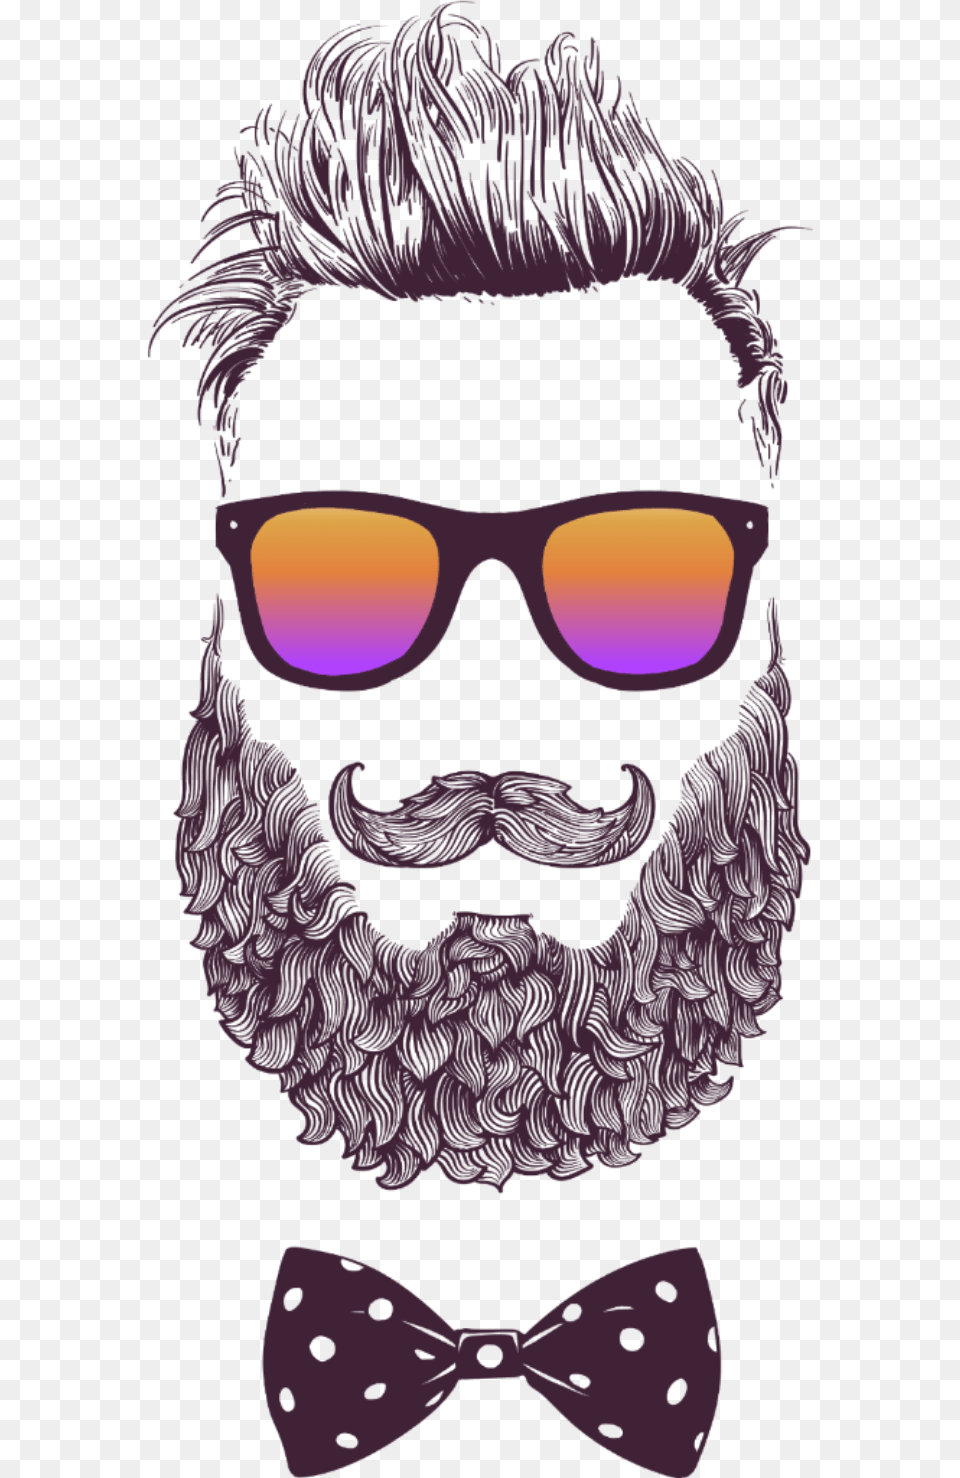 Beard Hipster Man Silhouette Sakal Erkek Adam Illustration, Accessories, Face, Formal Wear, Head Png